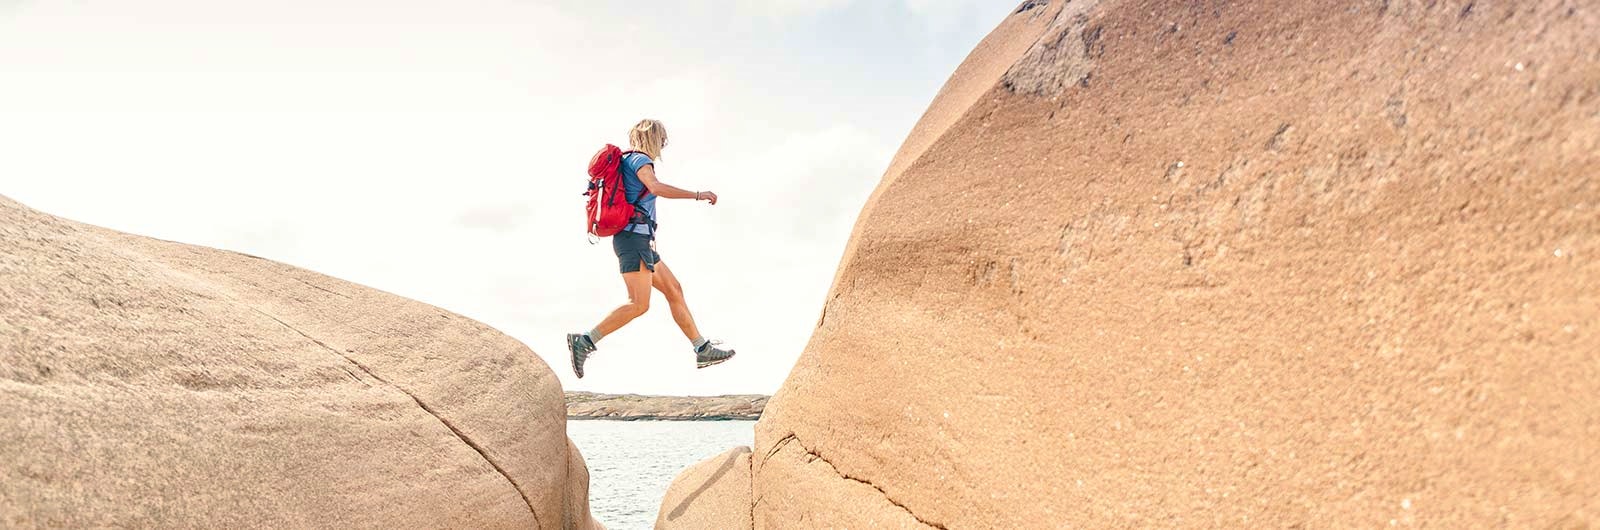 Vandrare hoppar mellan klippor på Bohusläns kust